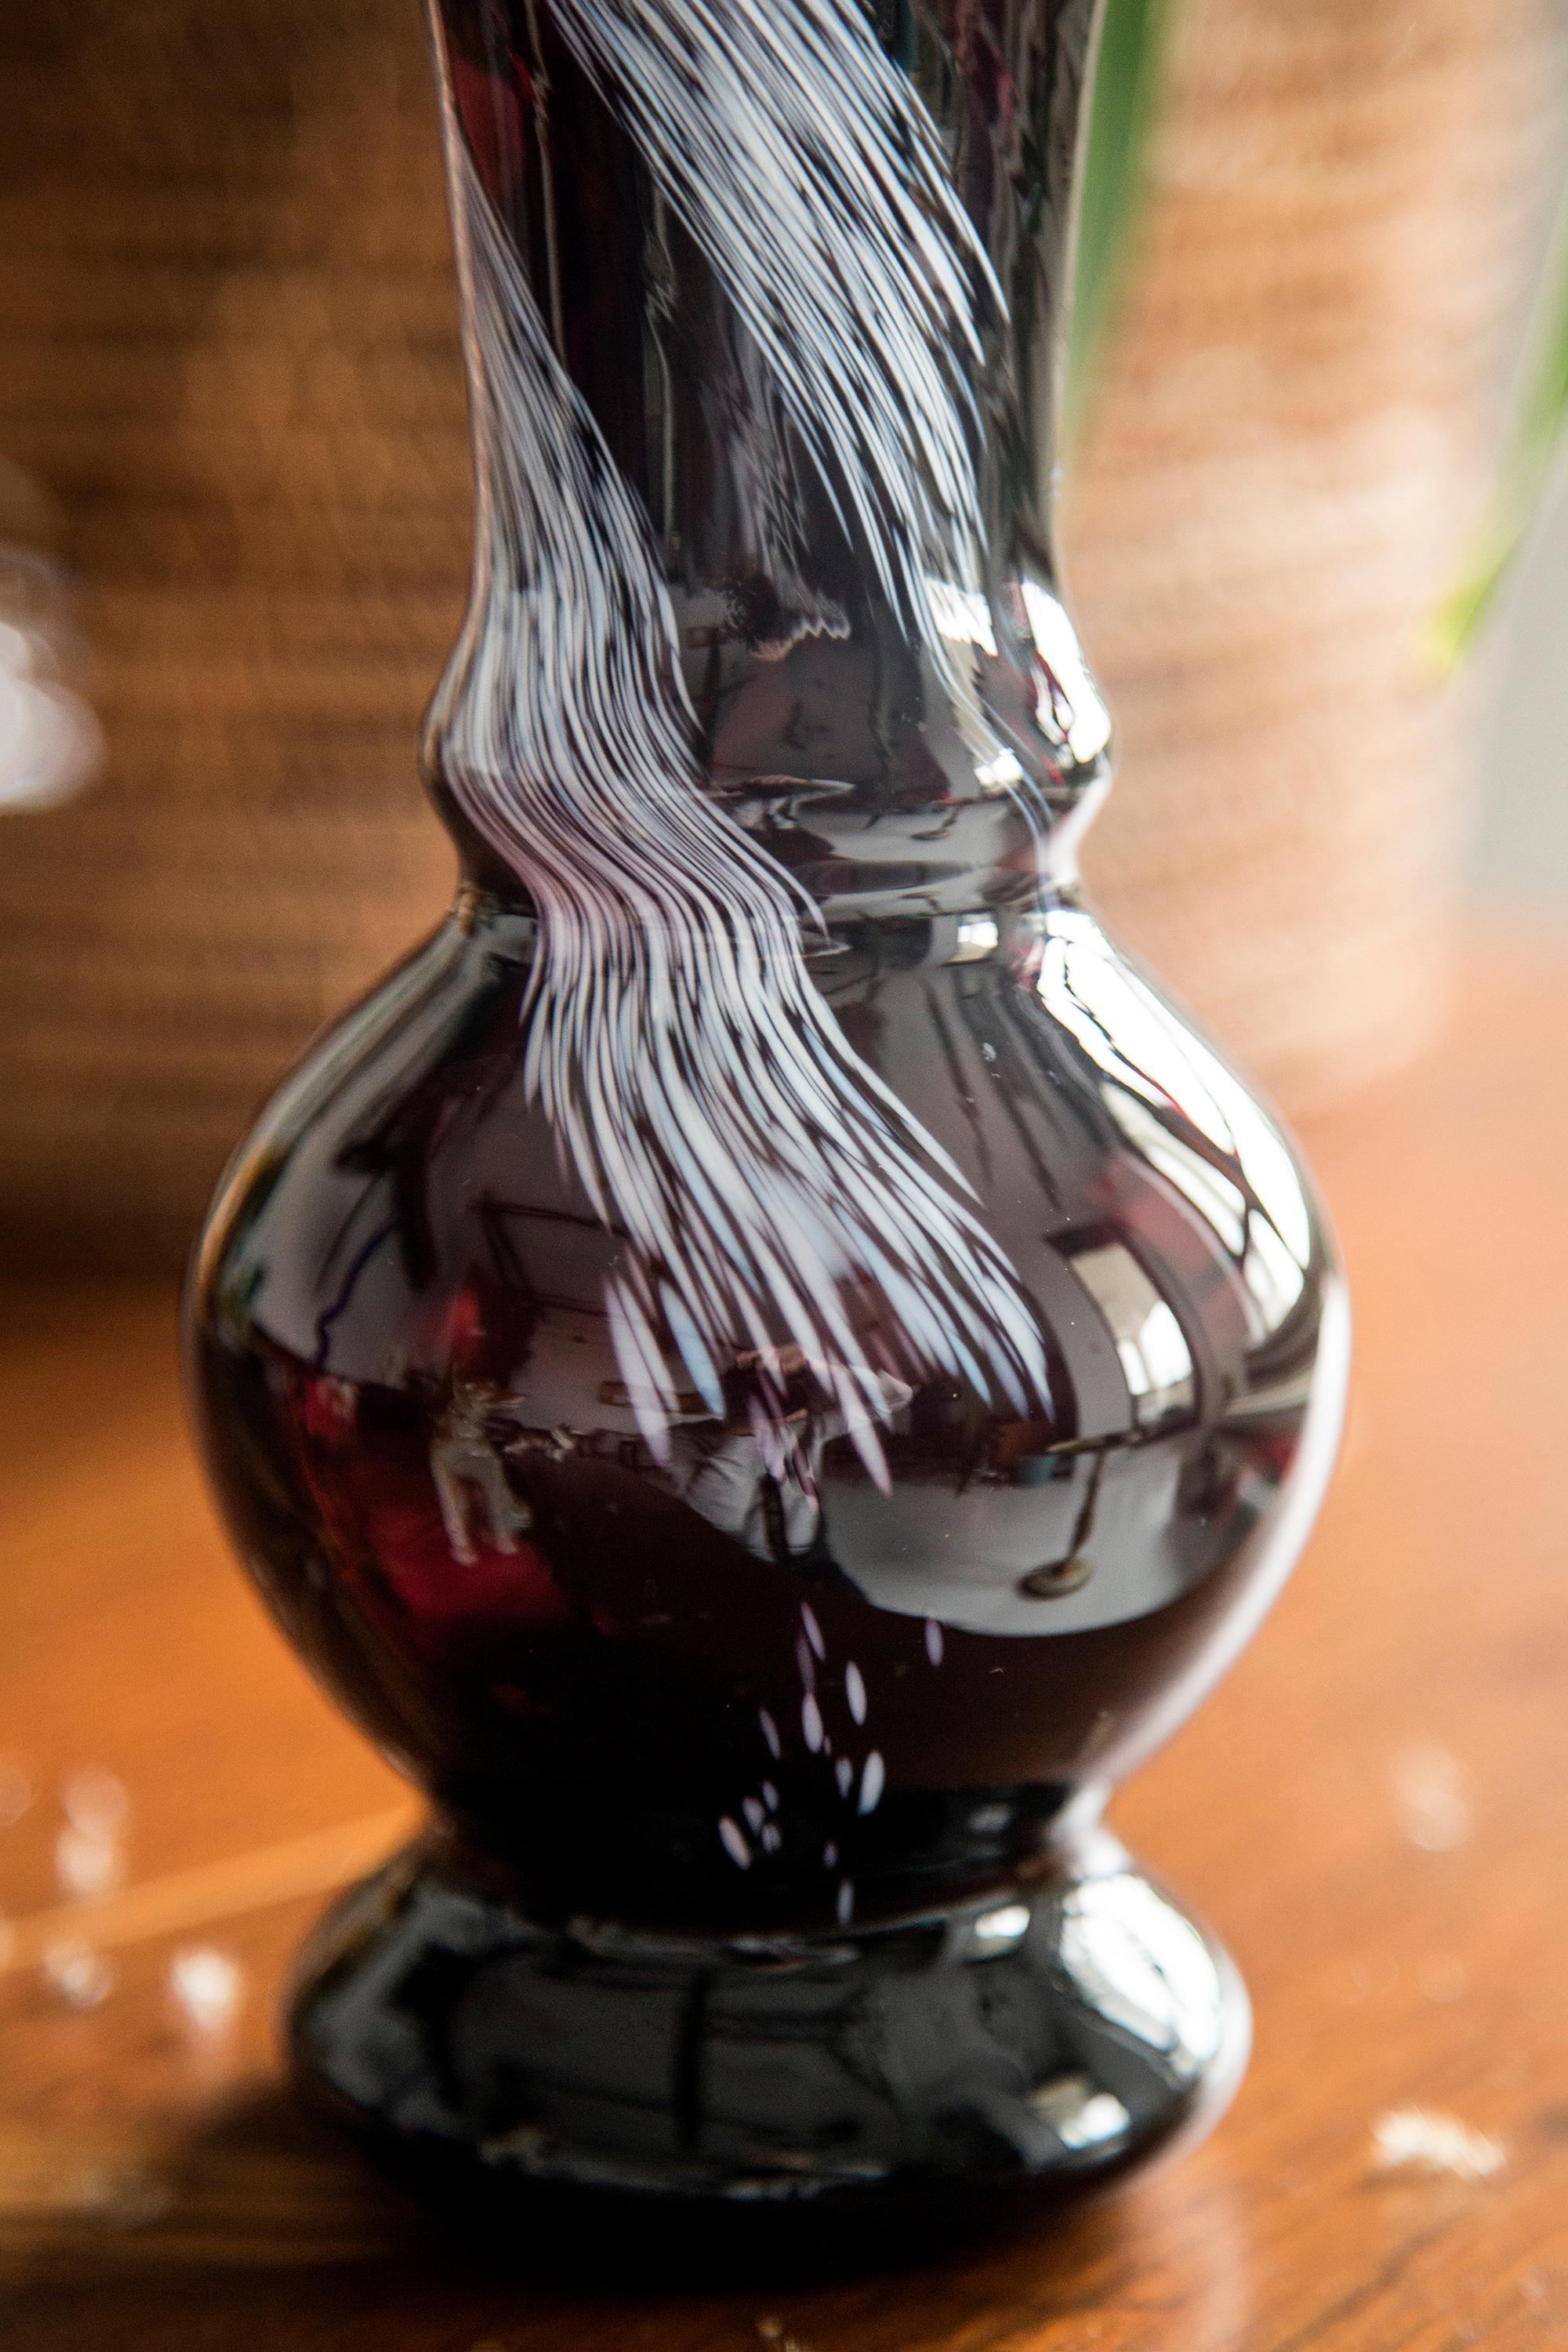 maroon vase